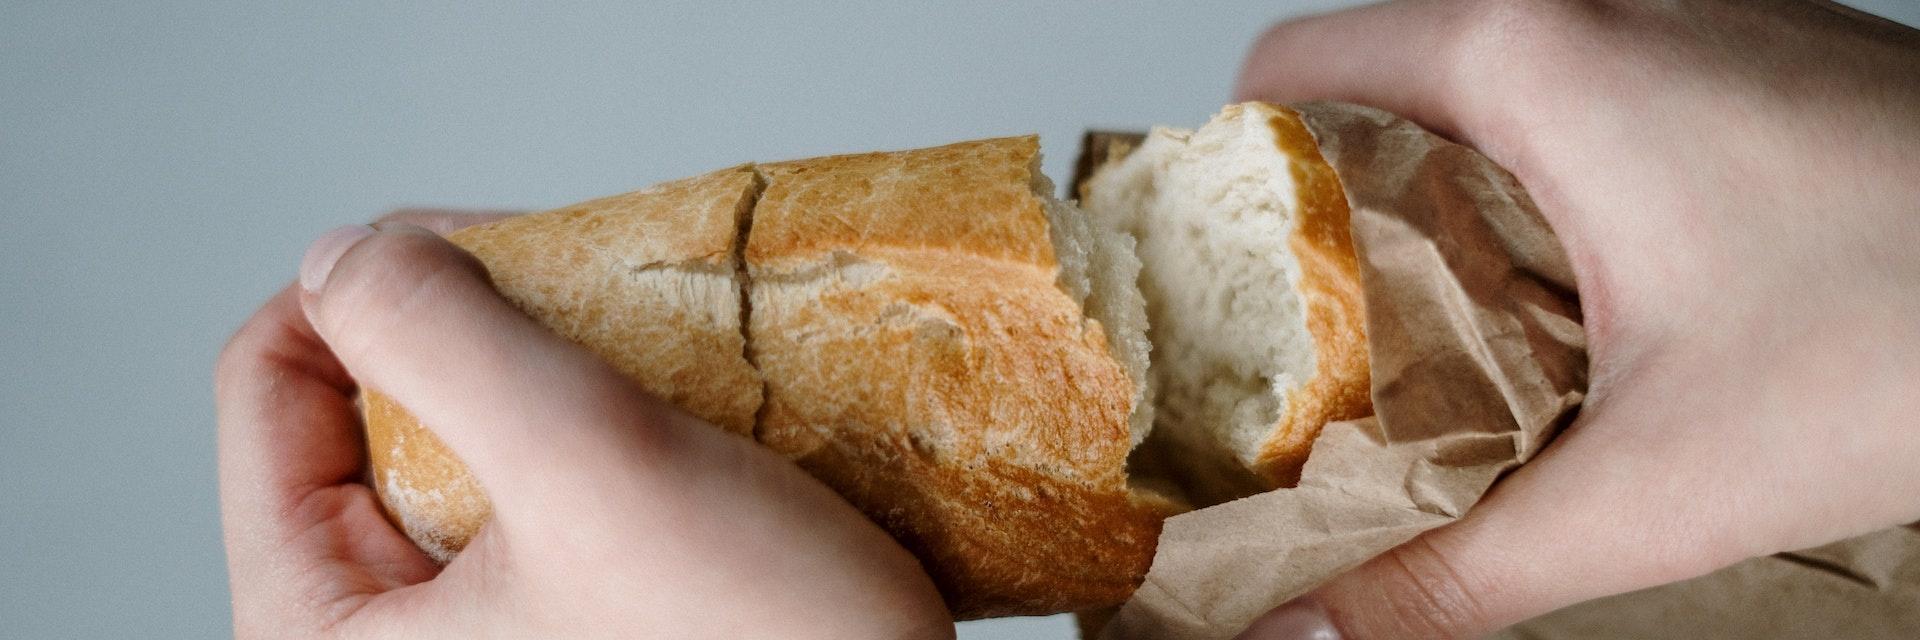 Brot teilen